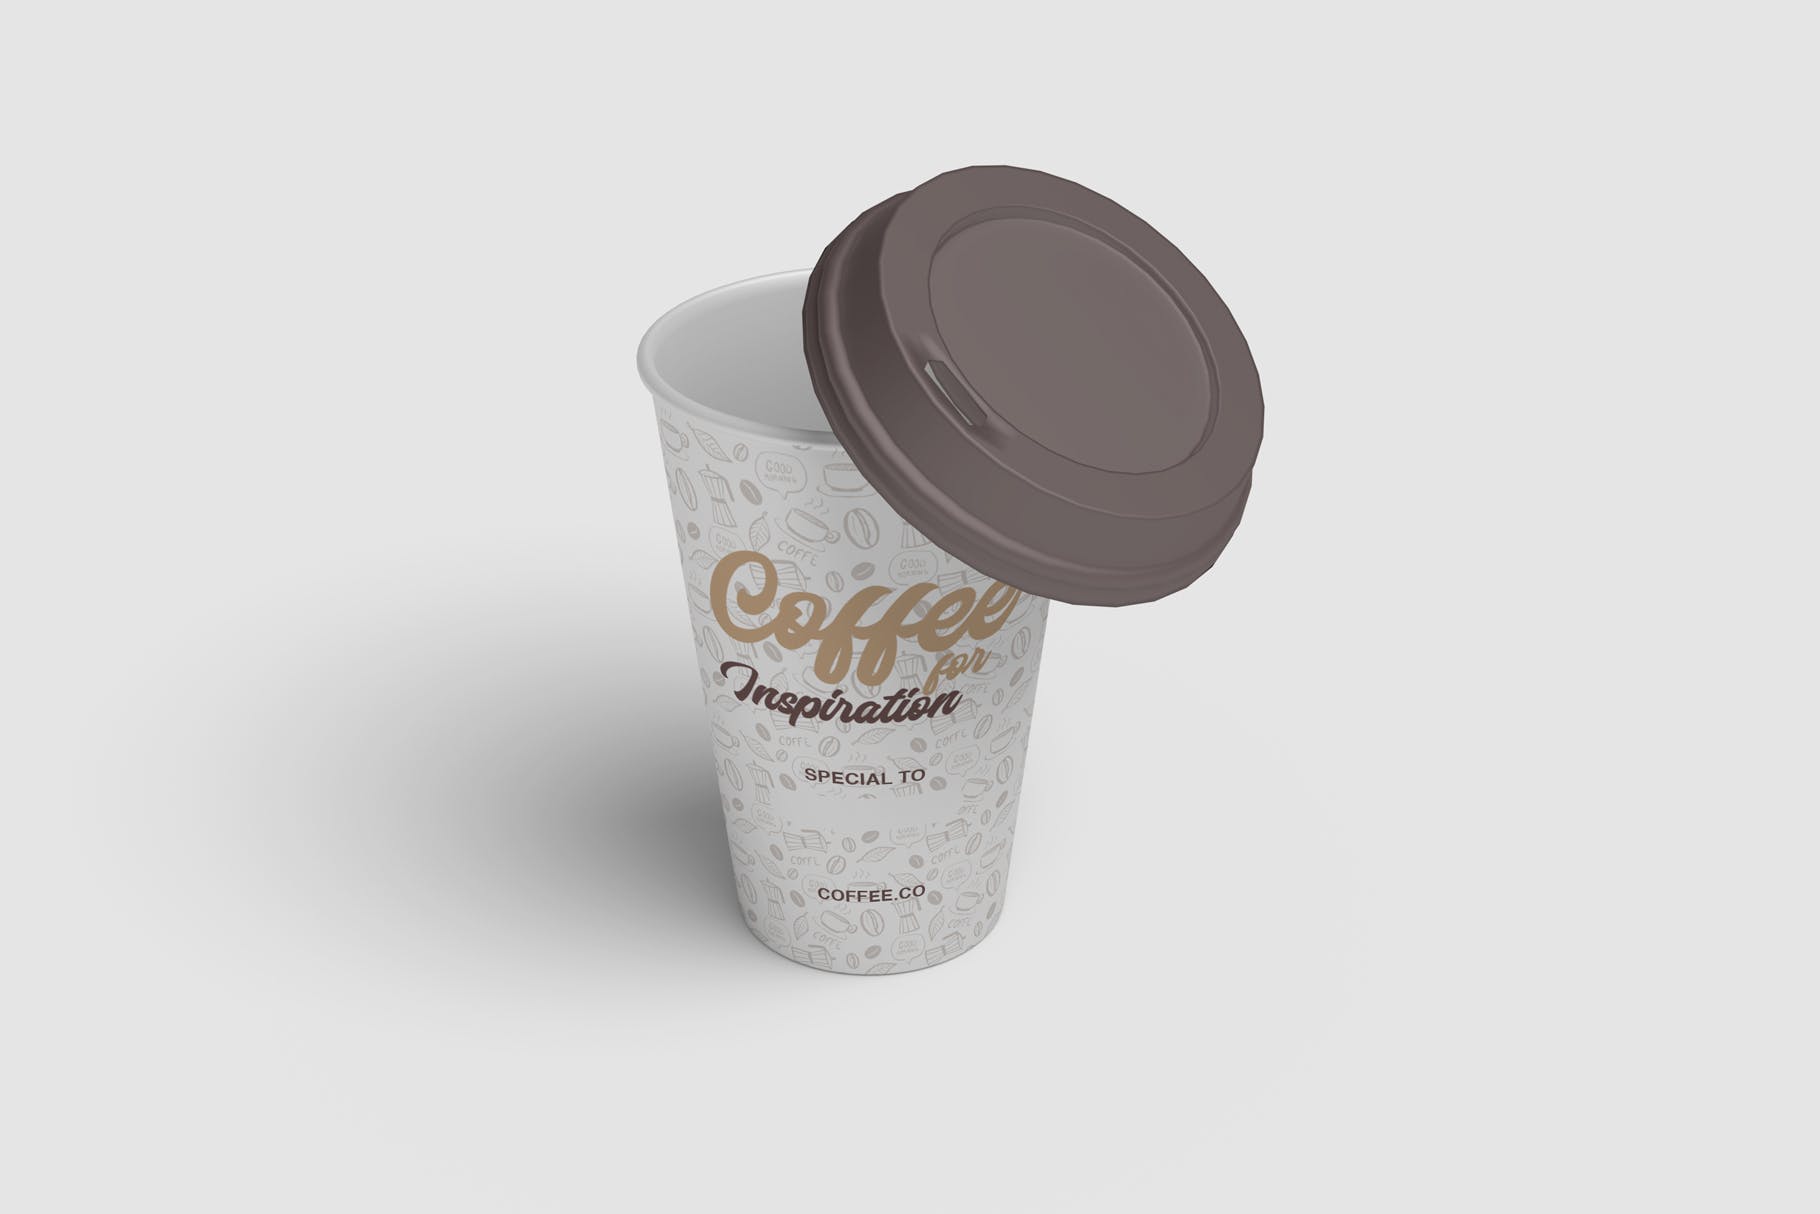 咖啡纸杯外观图案设计预览素材库精选 Cup of Coffee Mockup插图(1)